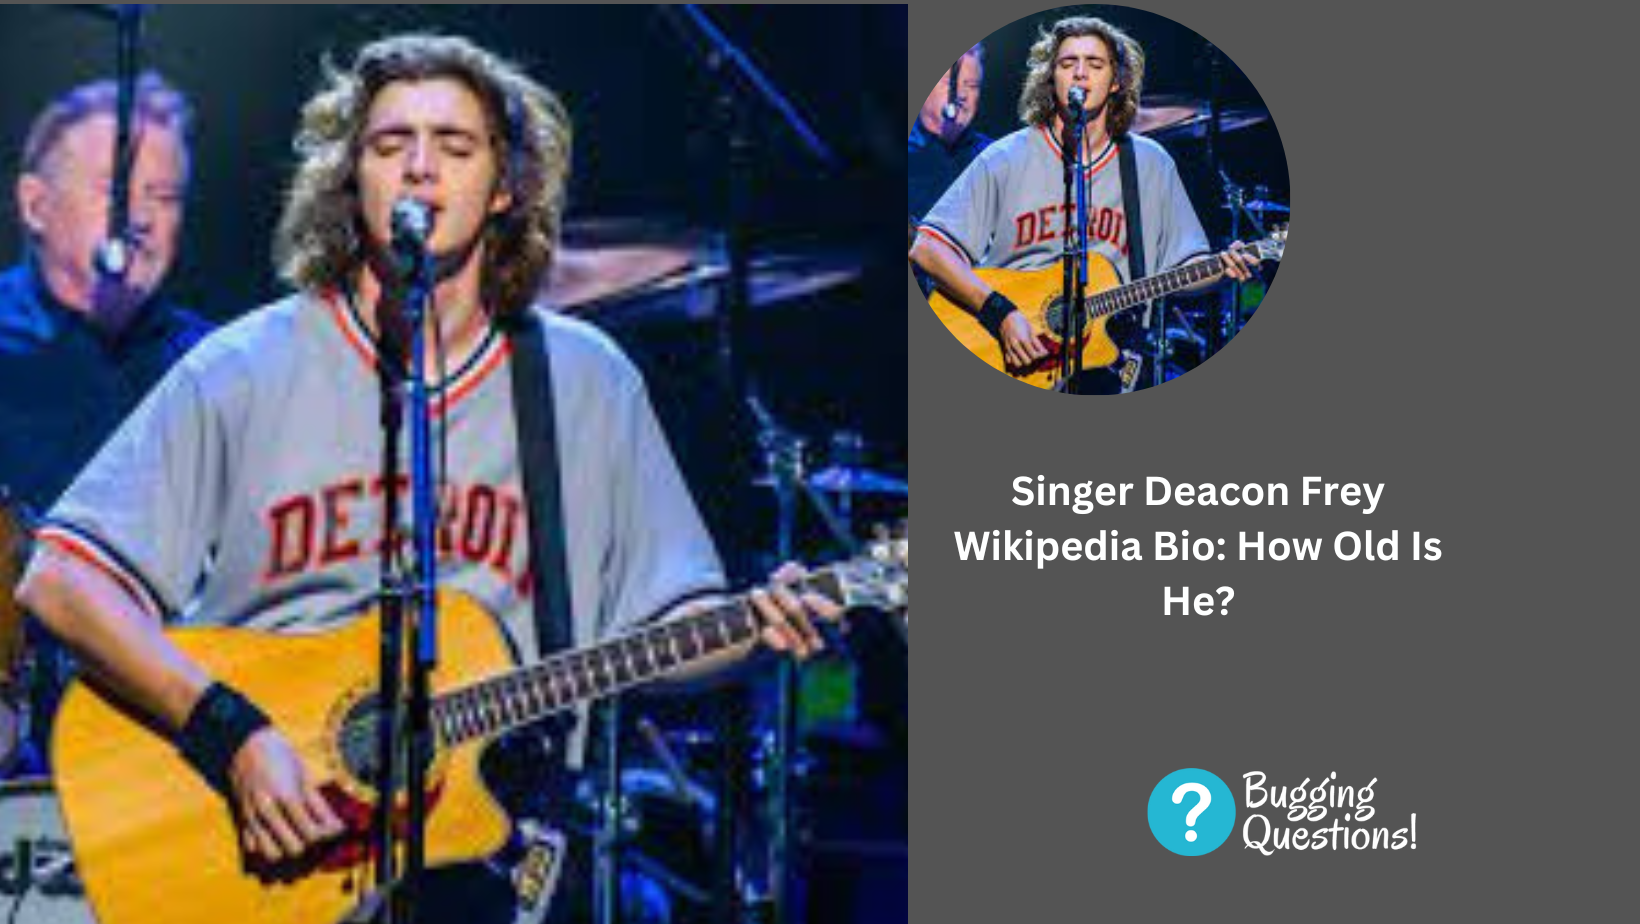 Singer Deacon Frey Wikipedia Bio: How Old Is He?